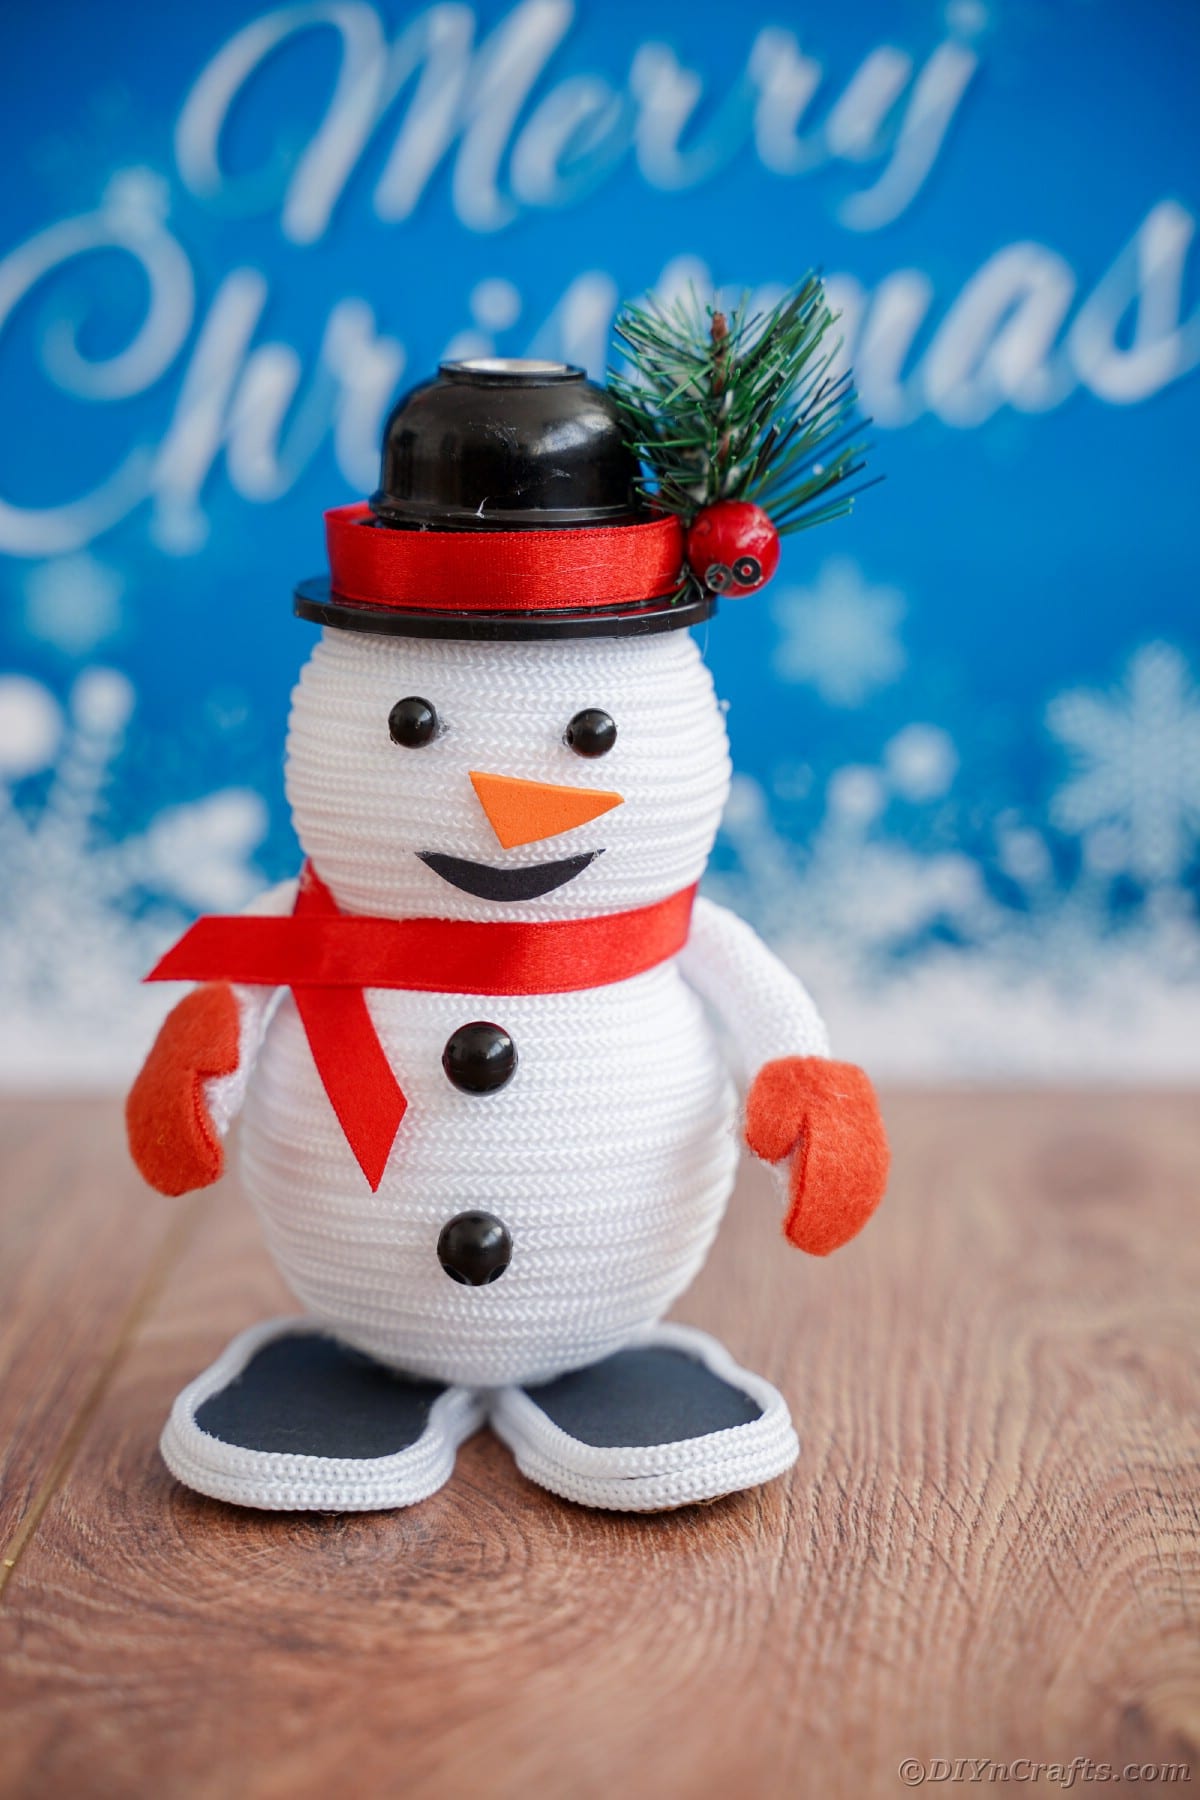 mini snežak na mizi pred modrim znakom, ki pravi vesel božič